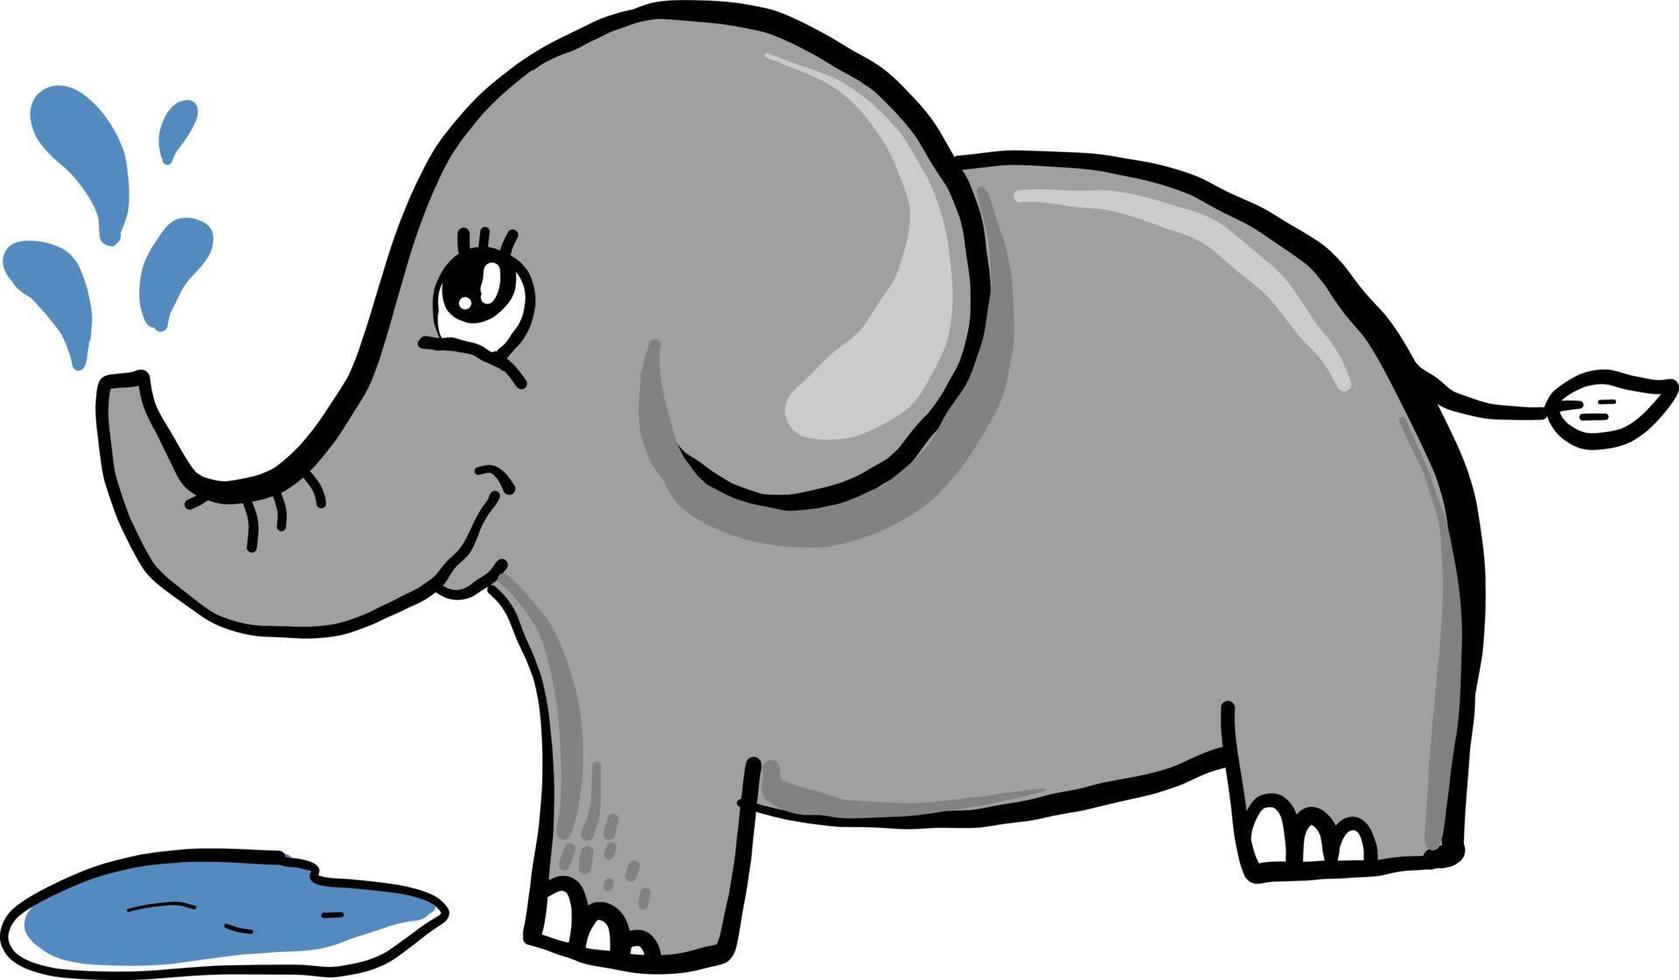 éléphant avec de l'eau, illustration, vecteur sur fond blanc.